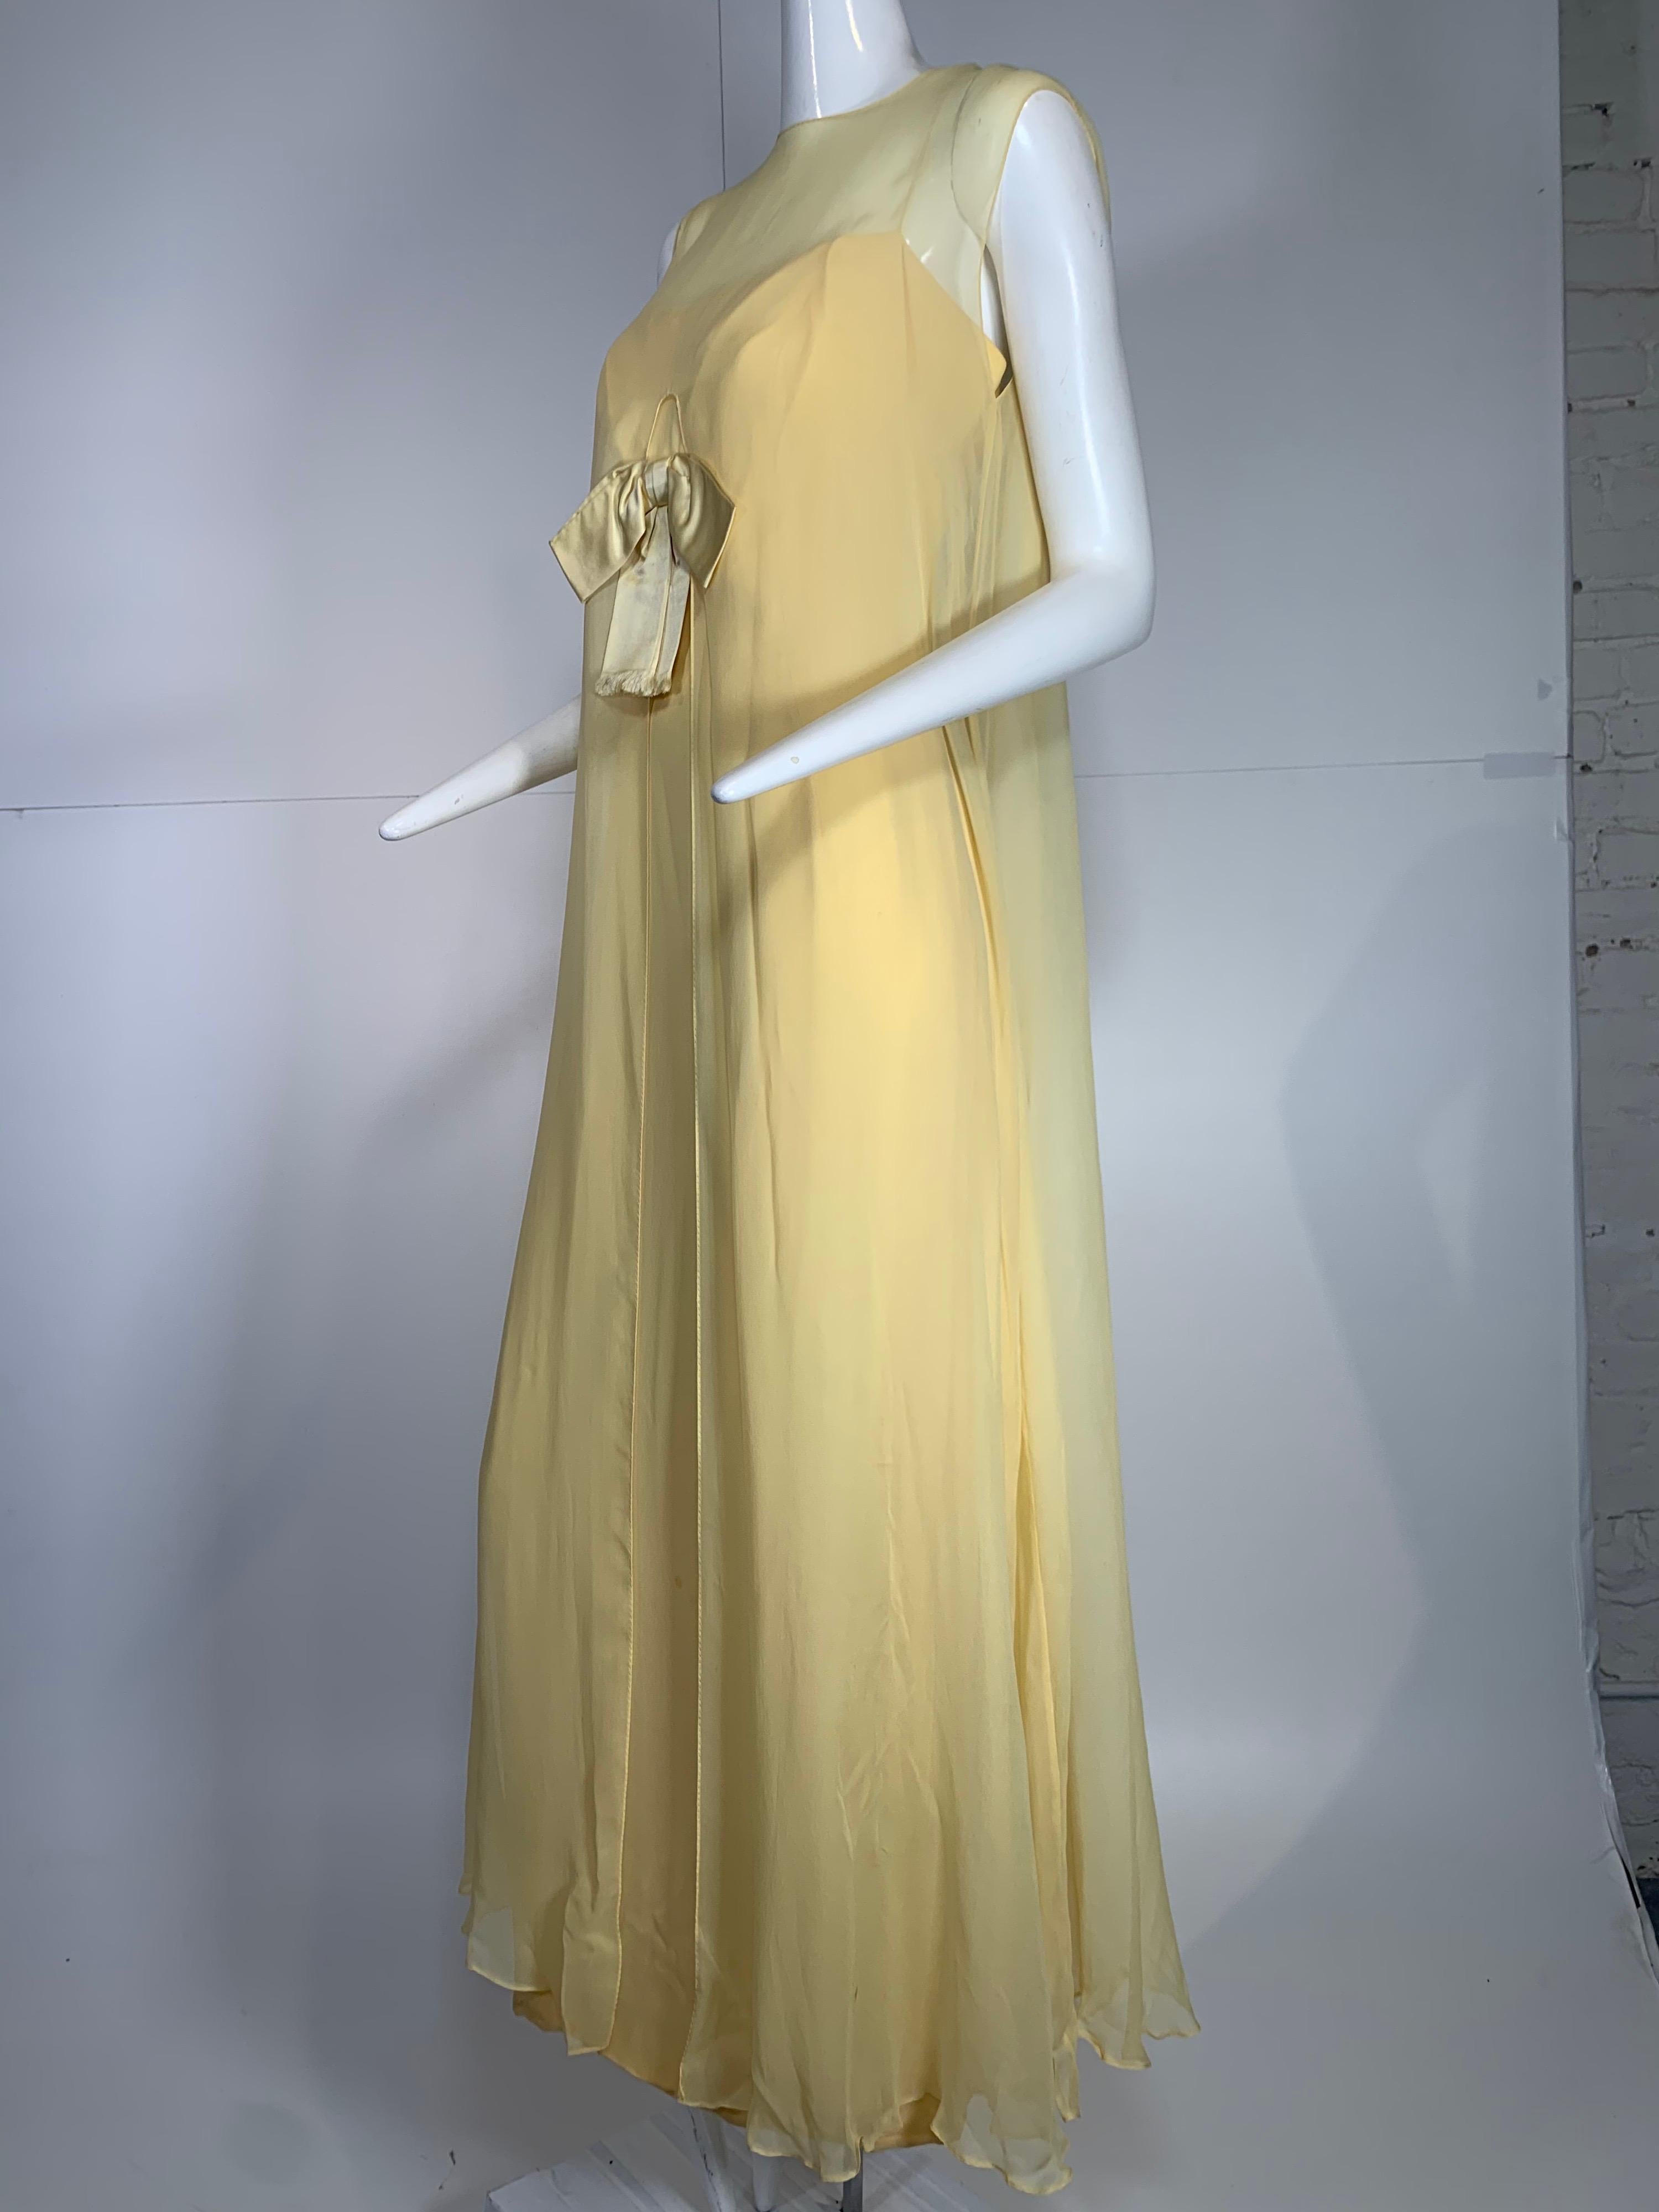 1960er Bonwit Teller blassbuttergelbes Seidenchiffon-Säulenkleid mit Schleife vorne. Separate Overlay-Schicht, die vorne geteilt ist, so dass die Schleife am Mieder des Kleides außerhalb des Overlays sitzt. Reißverschluss an der Rückseite der Säule.